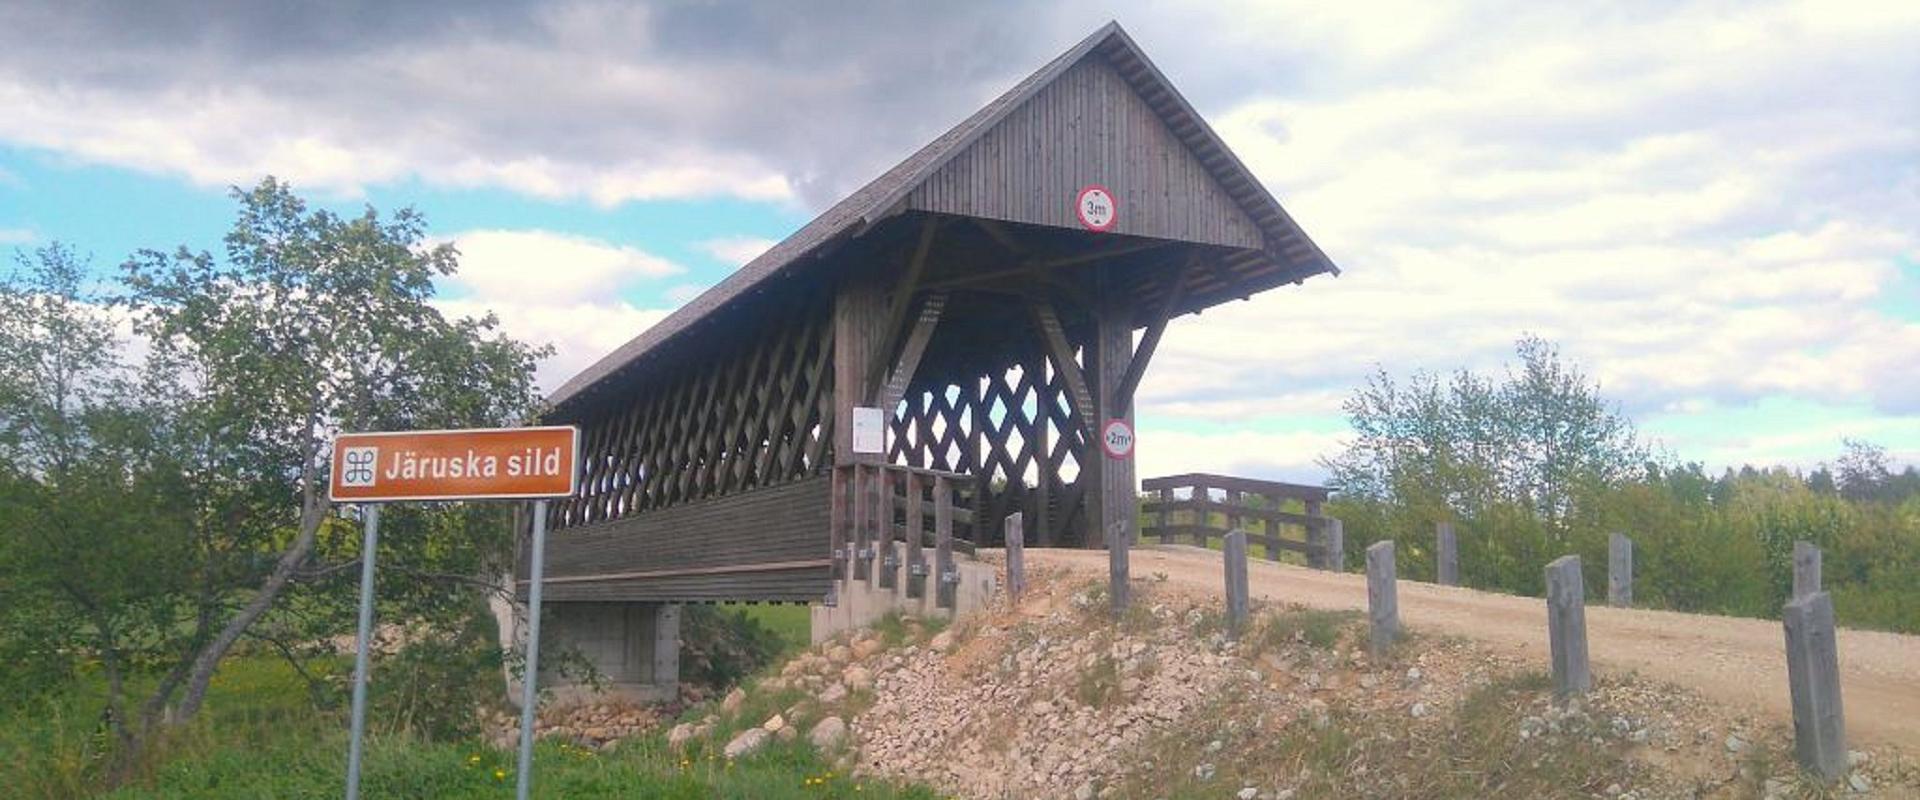 Brücke von Järuska